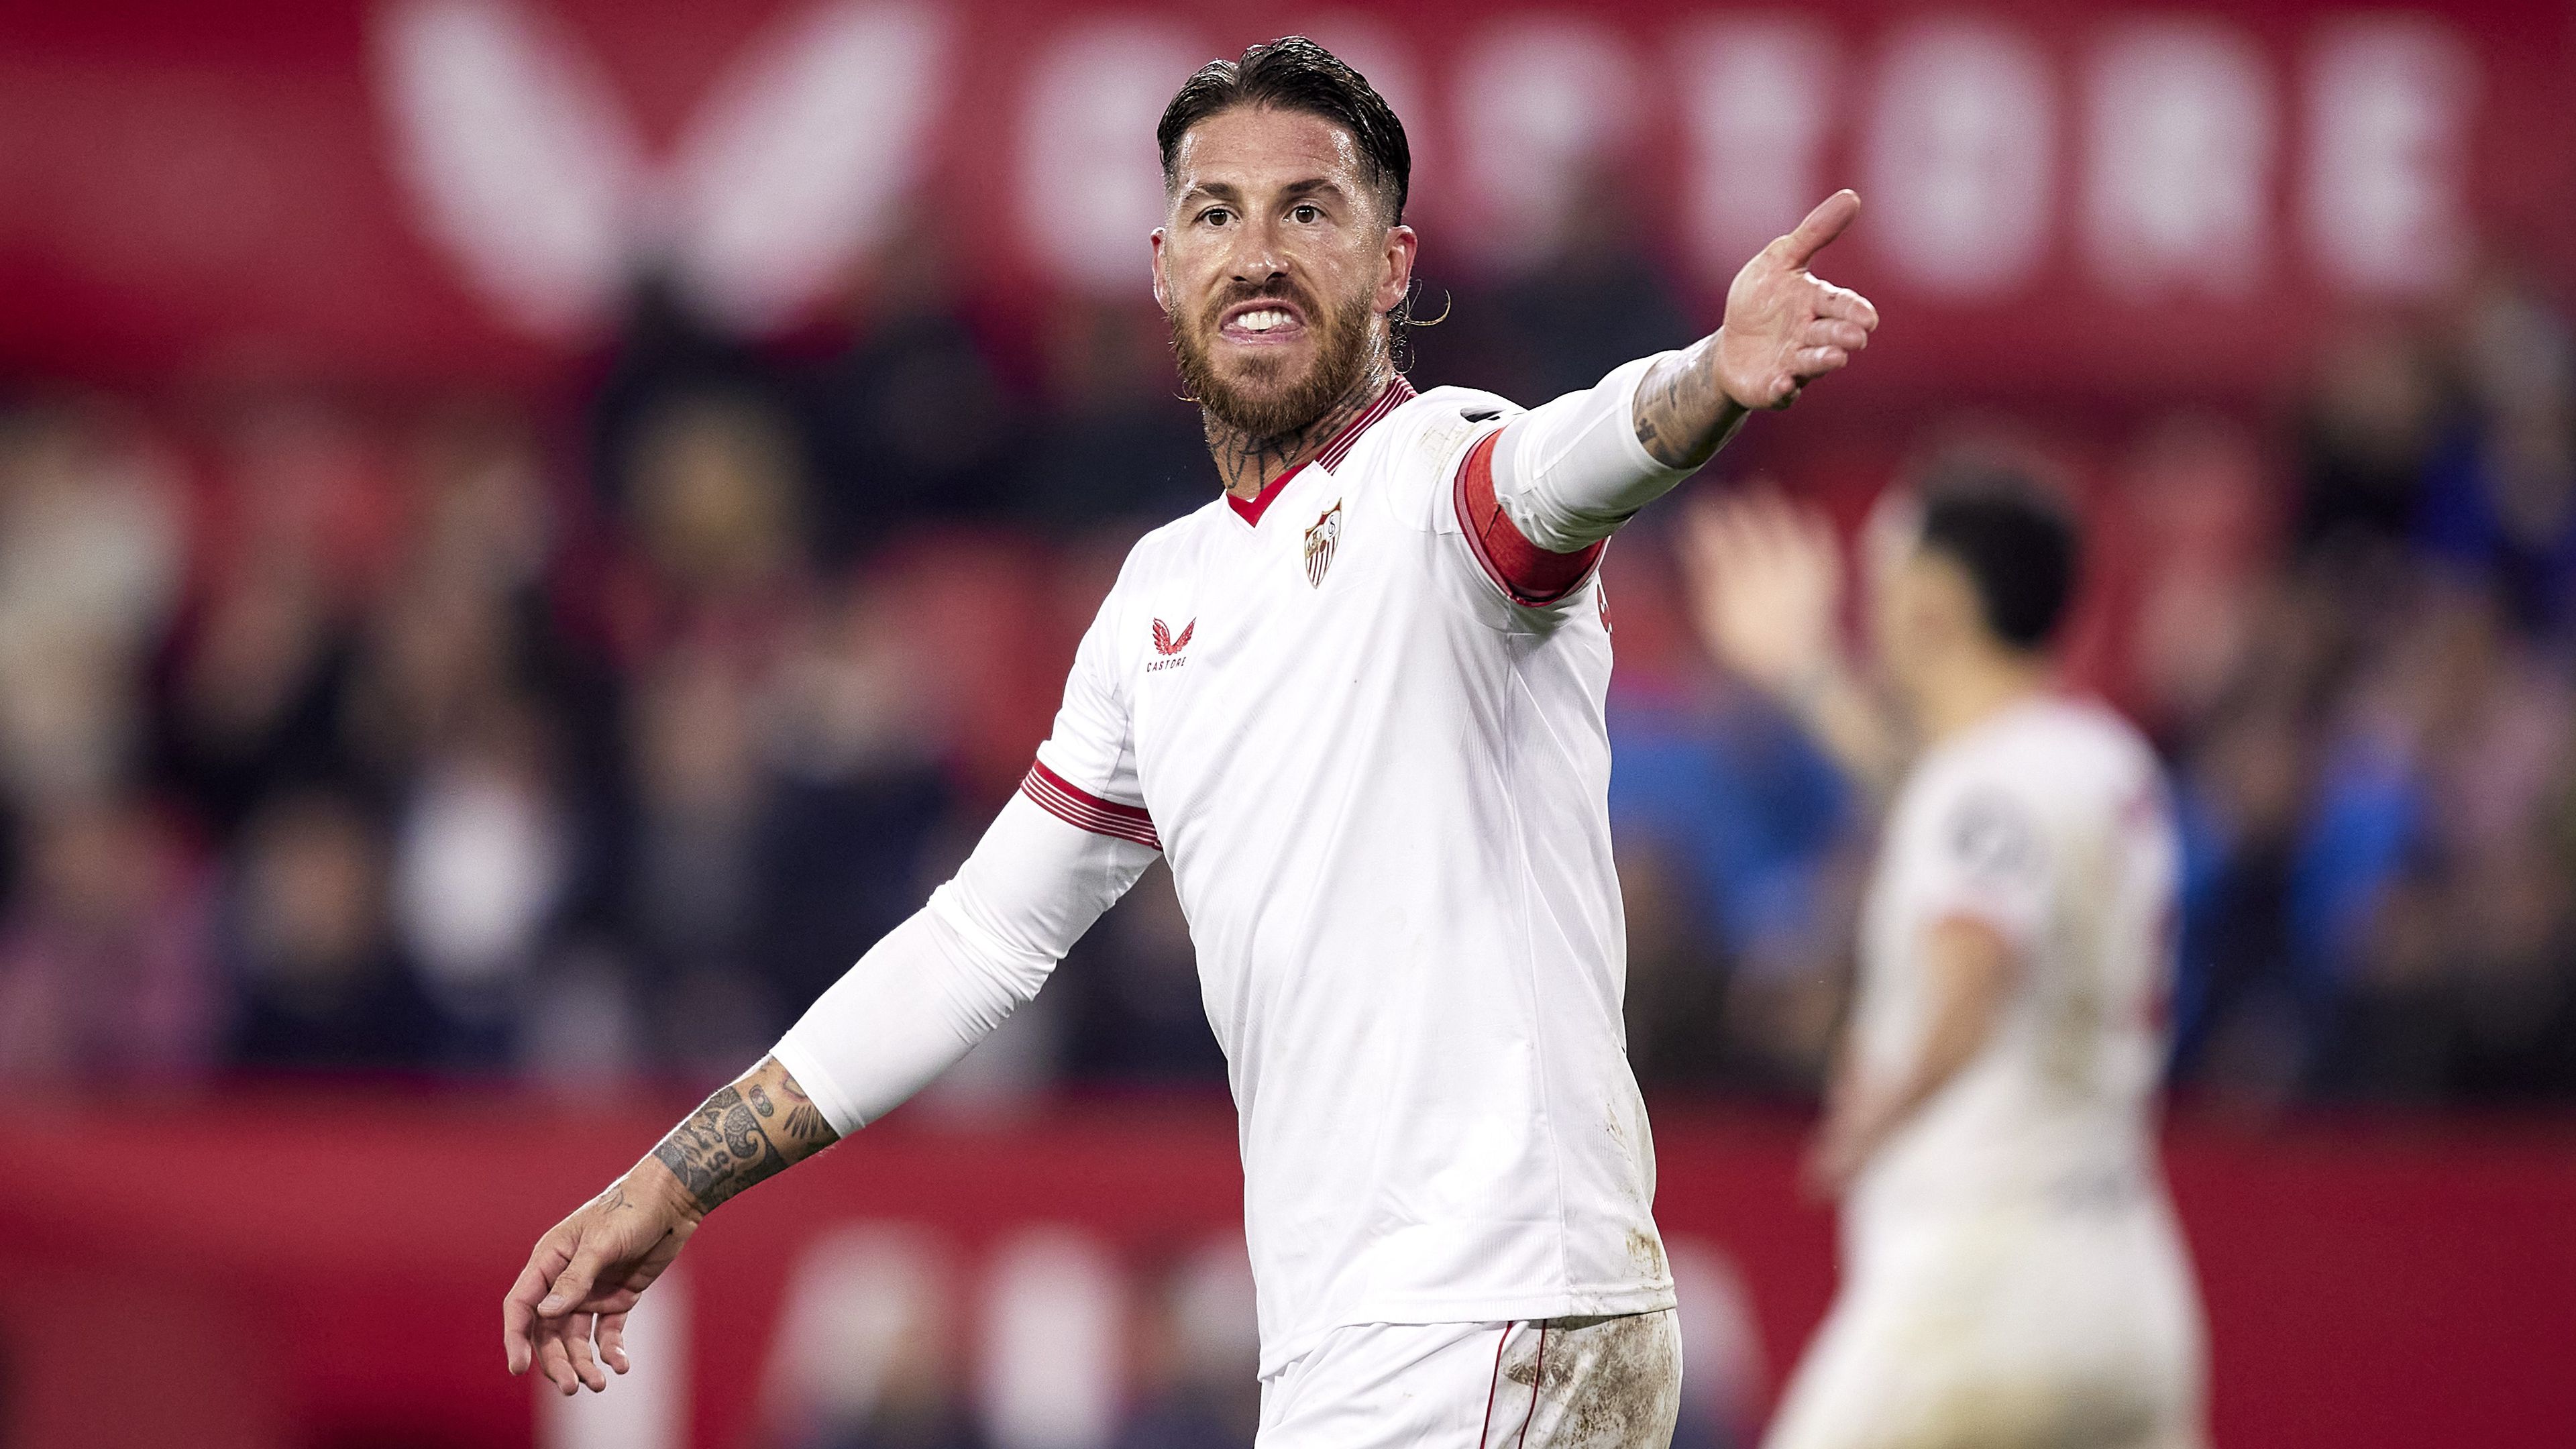 Sergio Ramos tisztában van vele, hogy nem szerepel jól a Sevilla, de a tiszteletlenséget nem tudja tolerálni